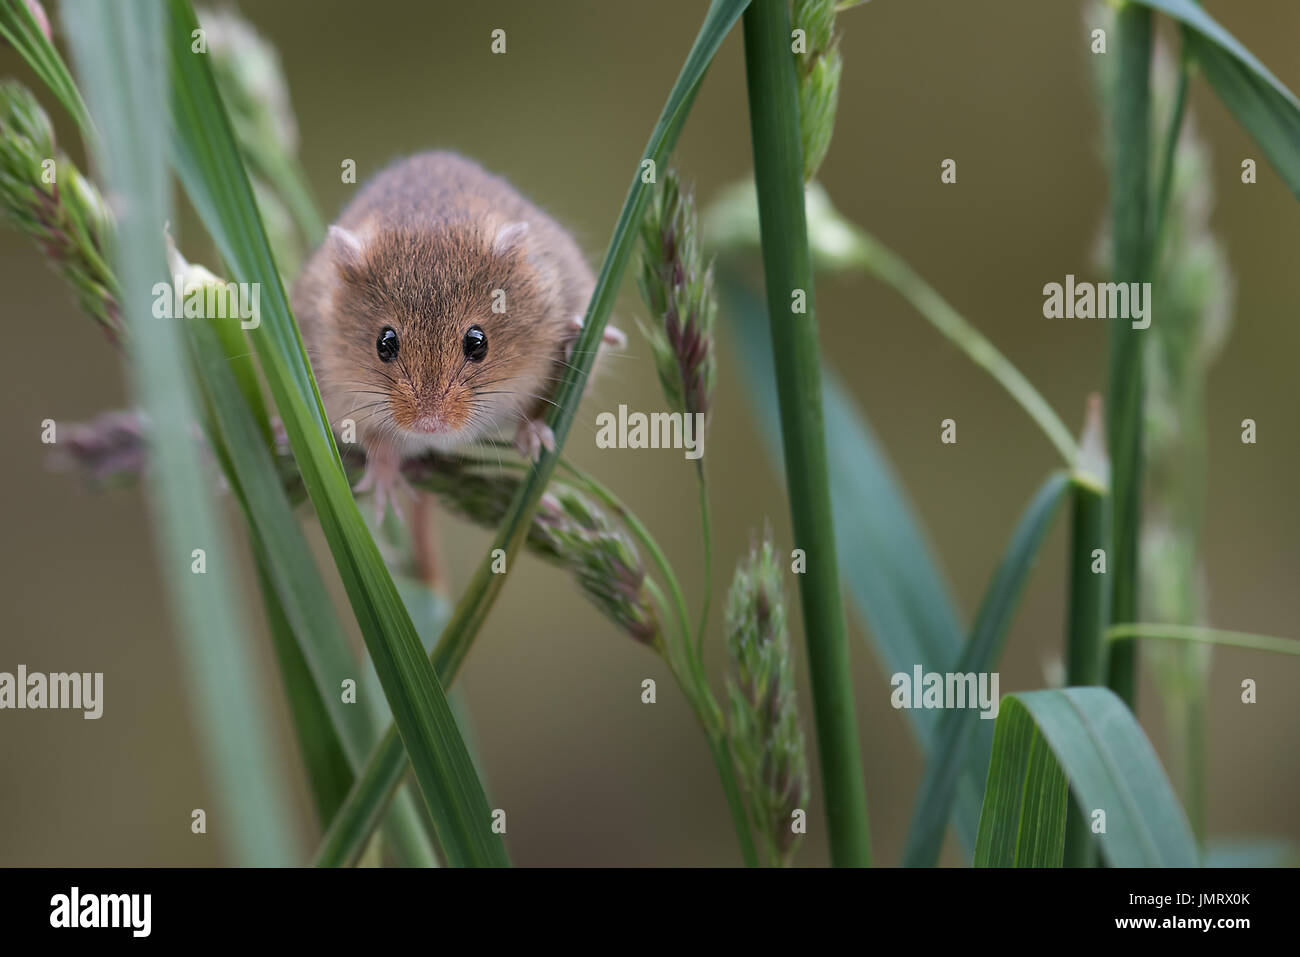 Una pequeña cosecha ratón subiendo retoños de hierba mirando hacia el espectador Foto de stock